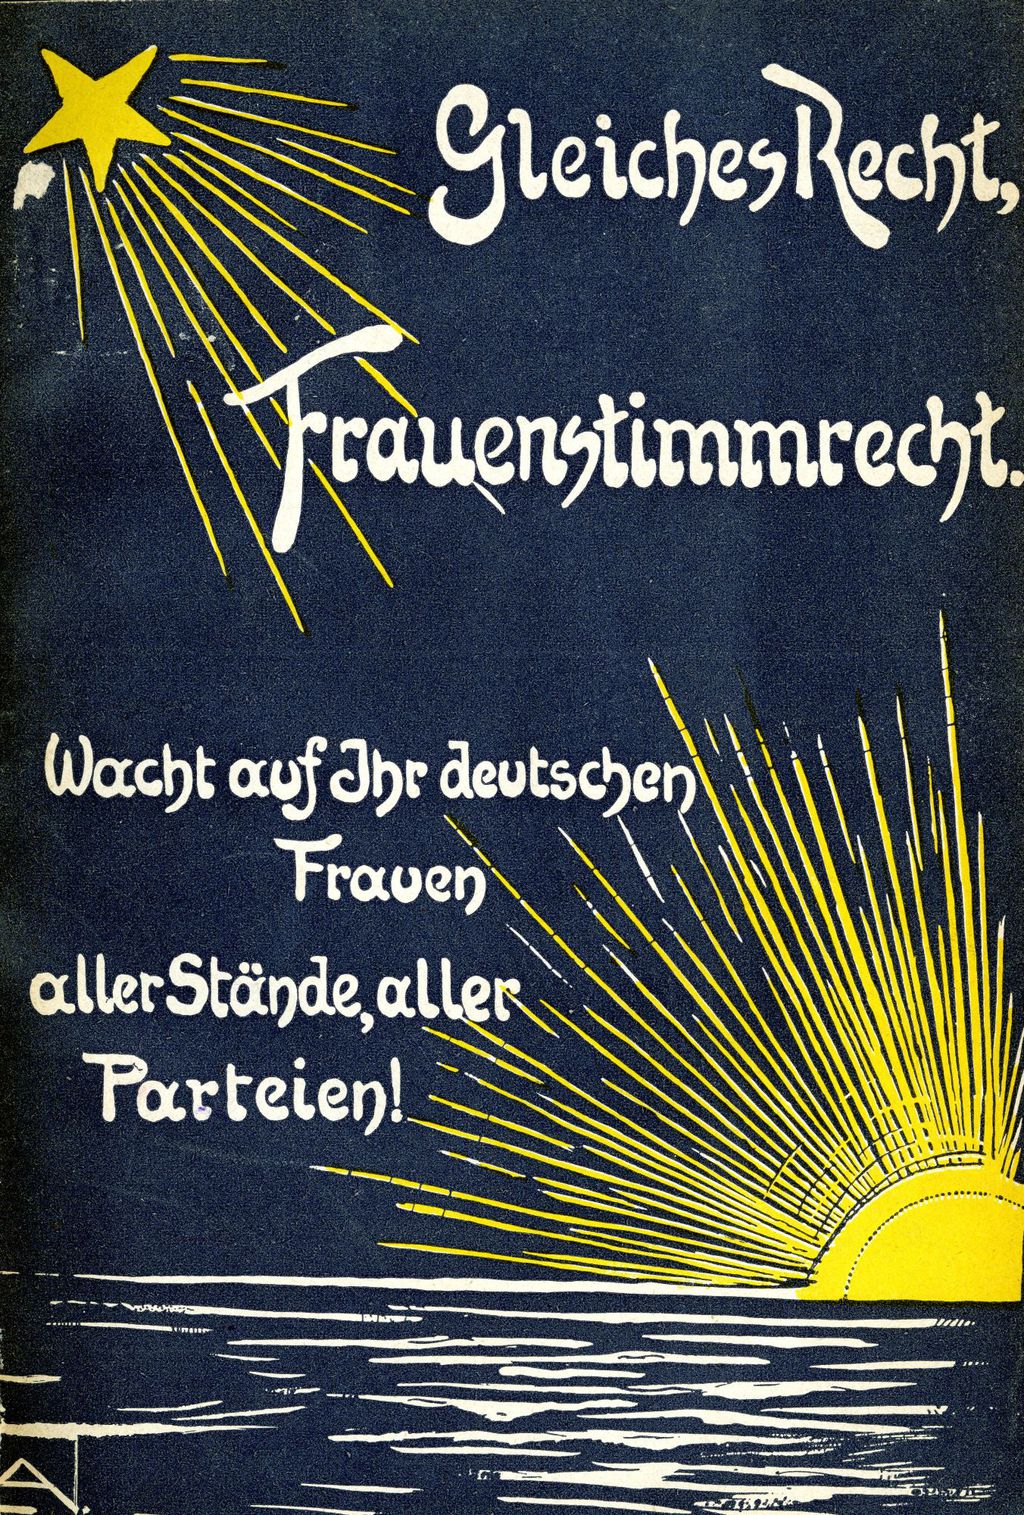 Broschüre: Heymann, Lida Gustava "Gleiches Recht, Frauenstimmrecht", 1907